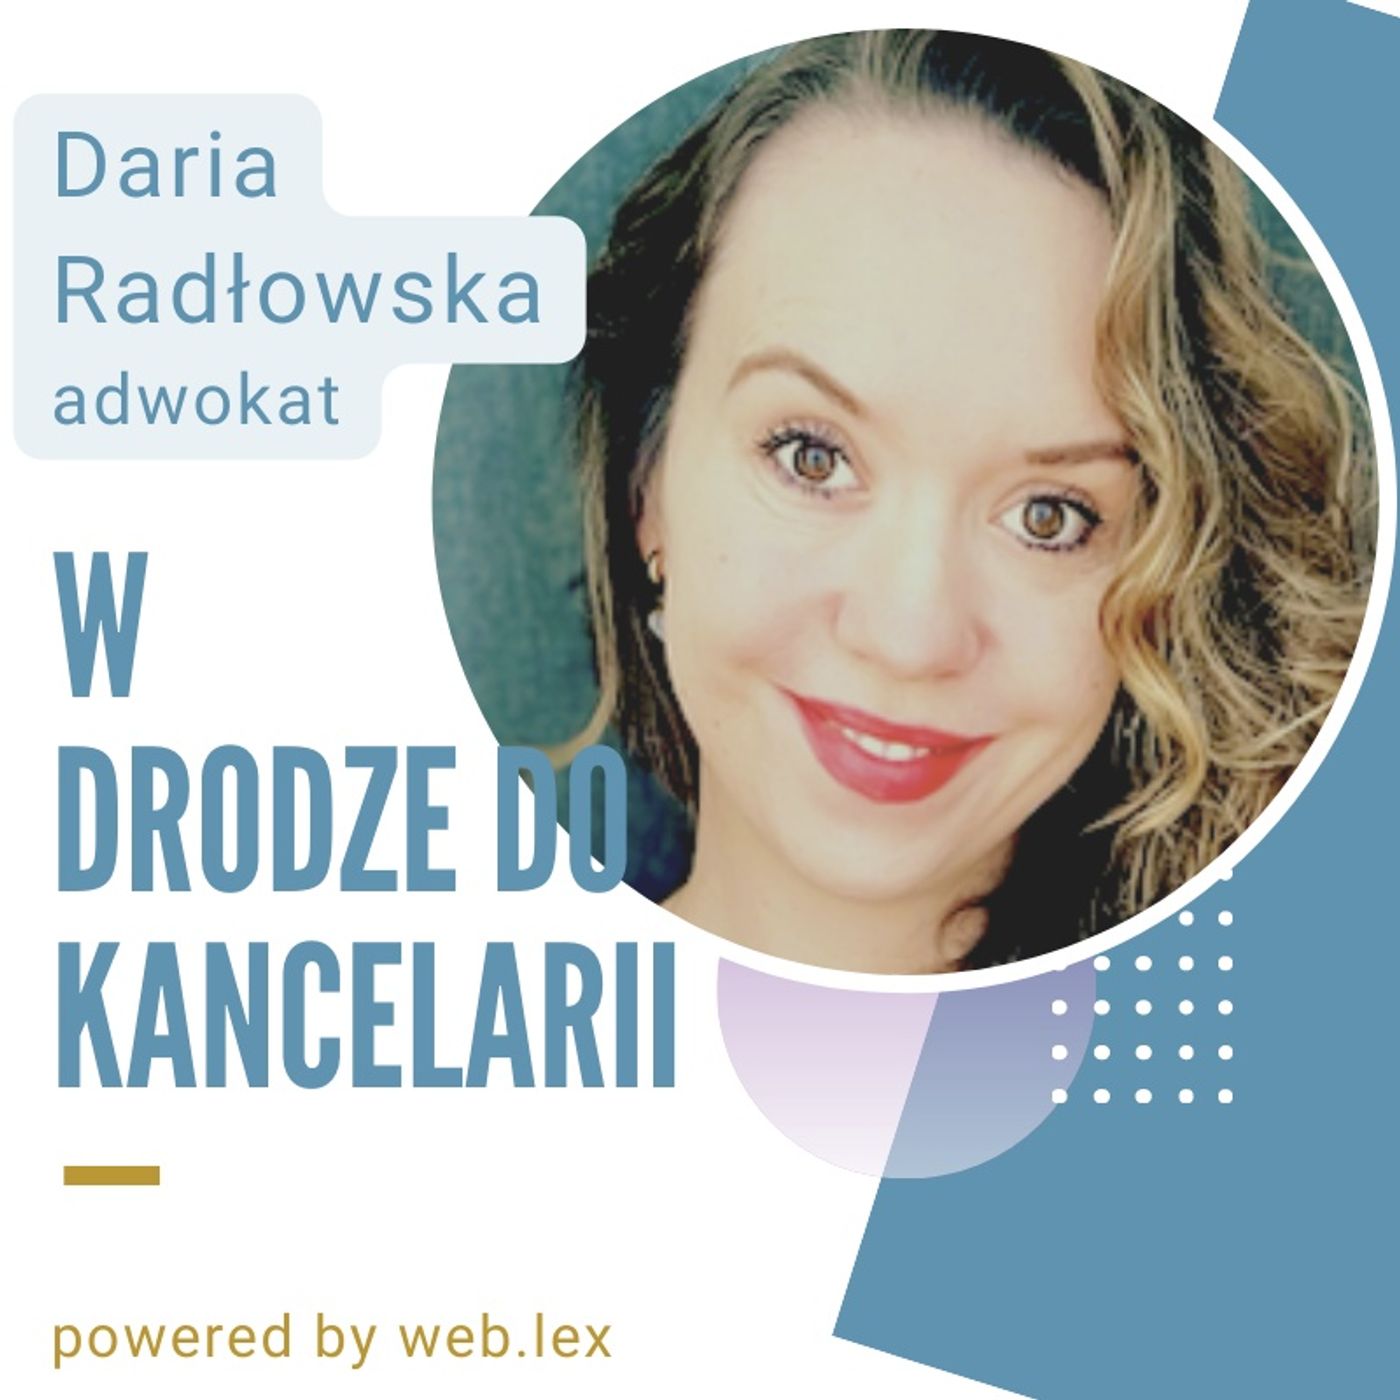 Rozwój kancelarii w małym mieście - rozmowa z Darią Radłowską, adwokatką